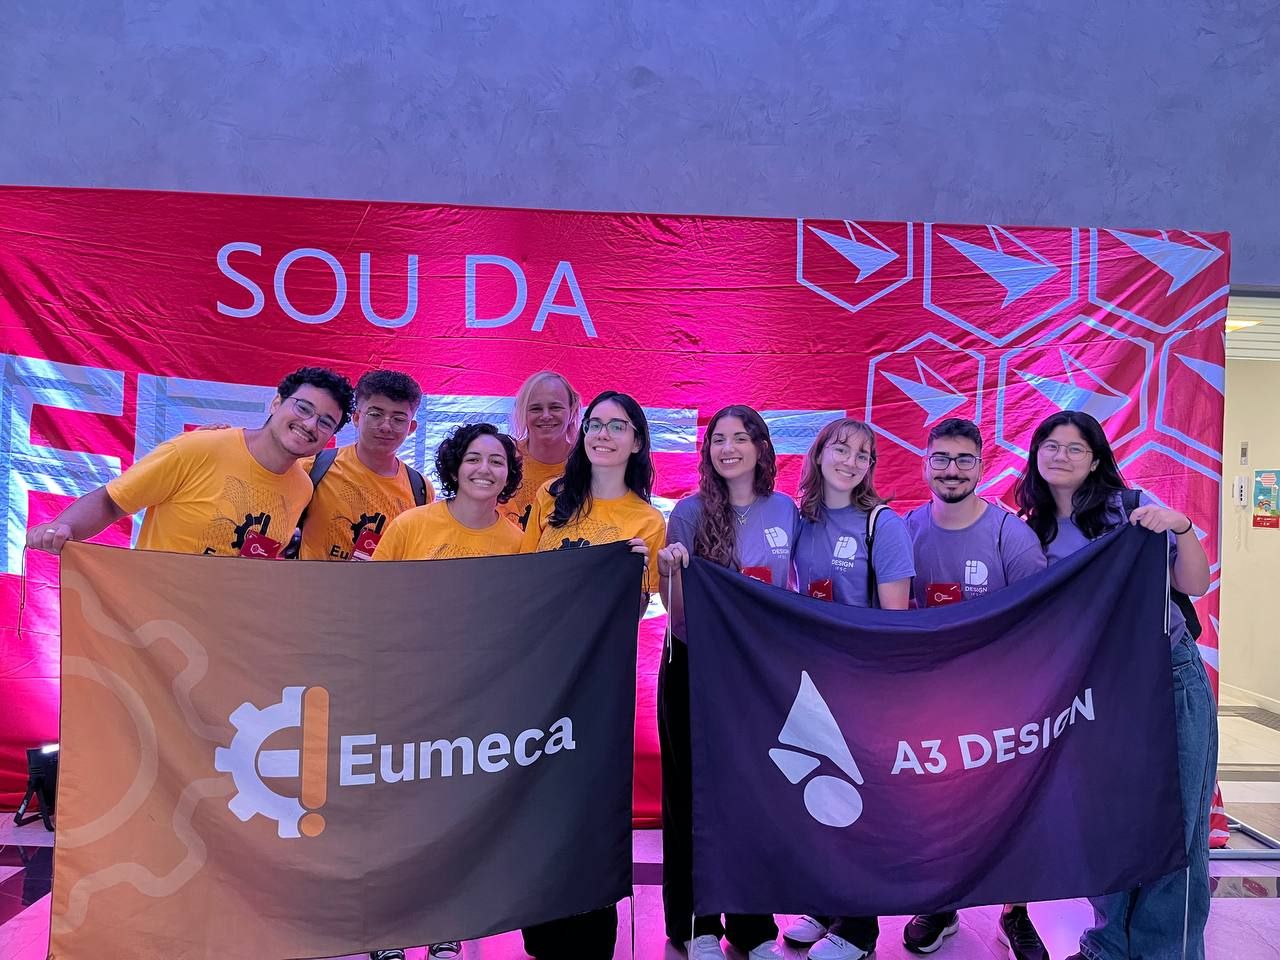 Eumeca e A3 Design, empresas juniores do Câmpus Florianópolis que estiveram presentes no evento